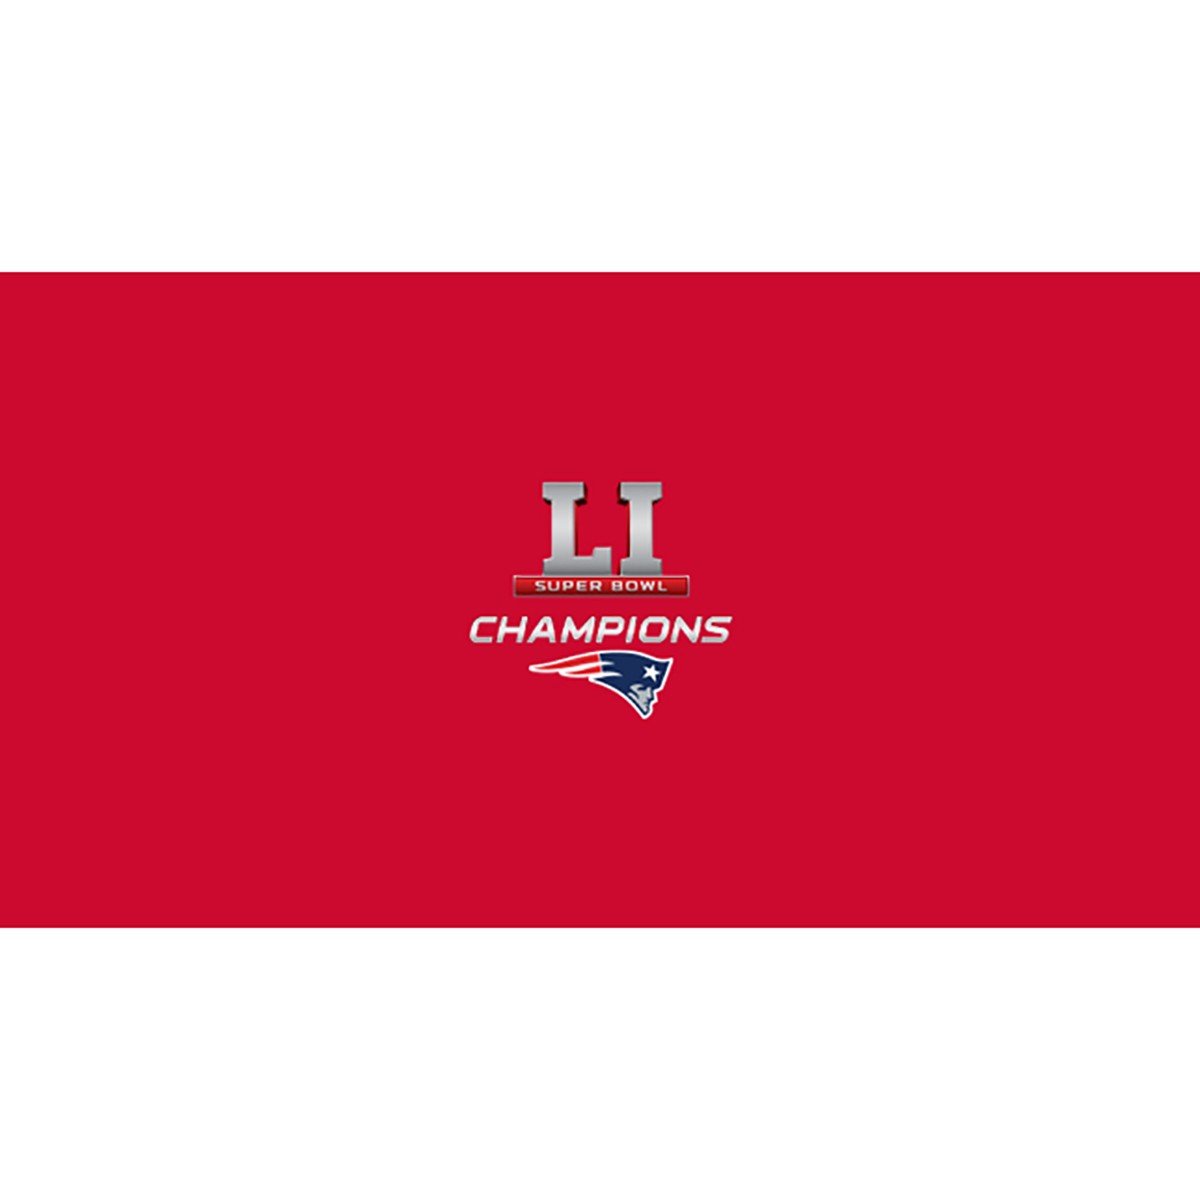 Imperial NFL Official Super Bowl LI Champions 8-Foot Billiard Cloth